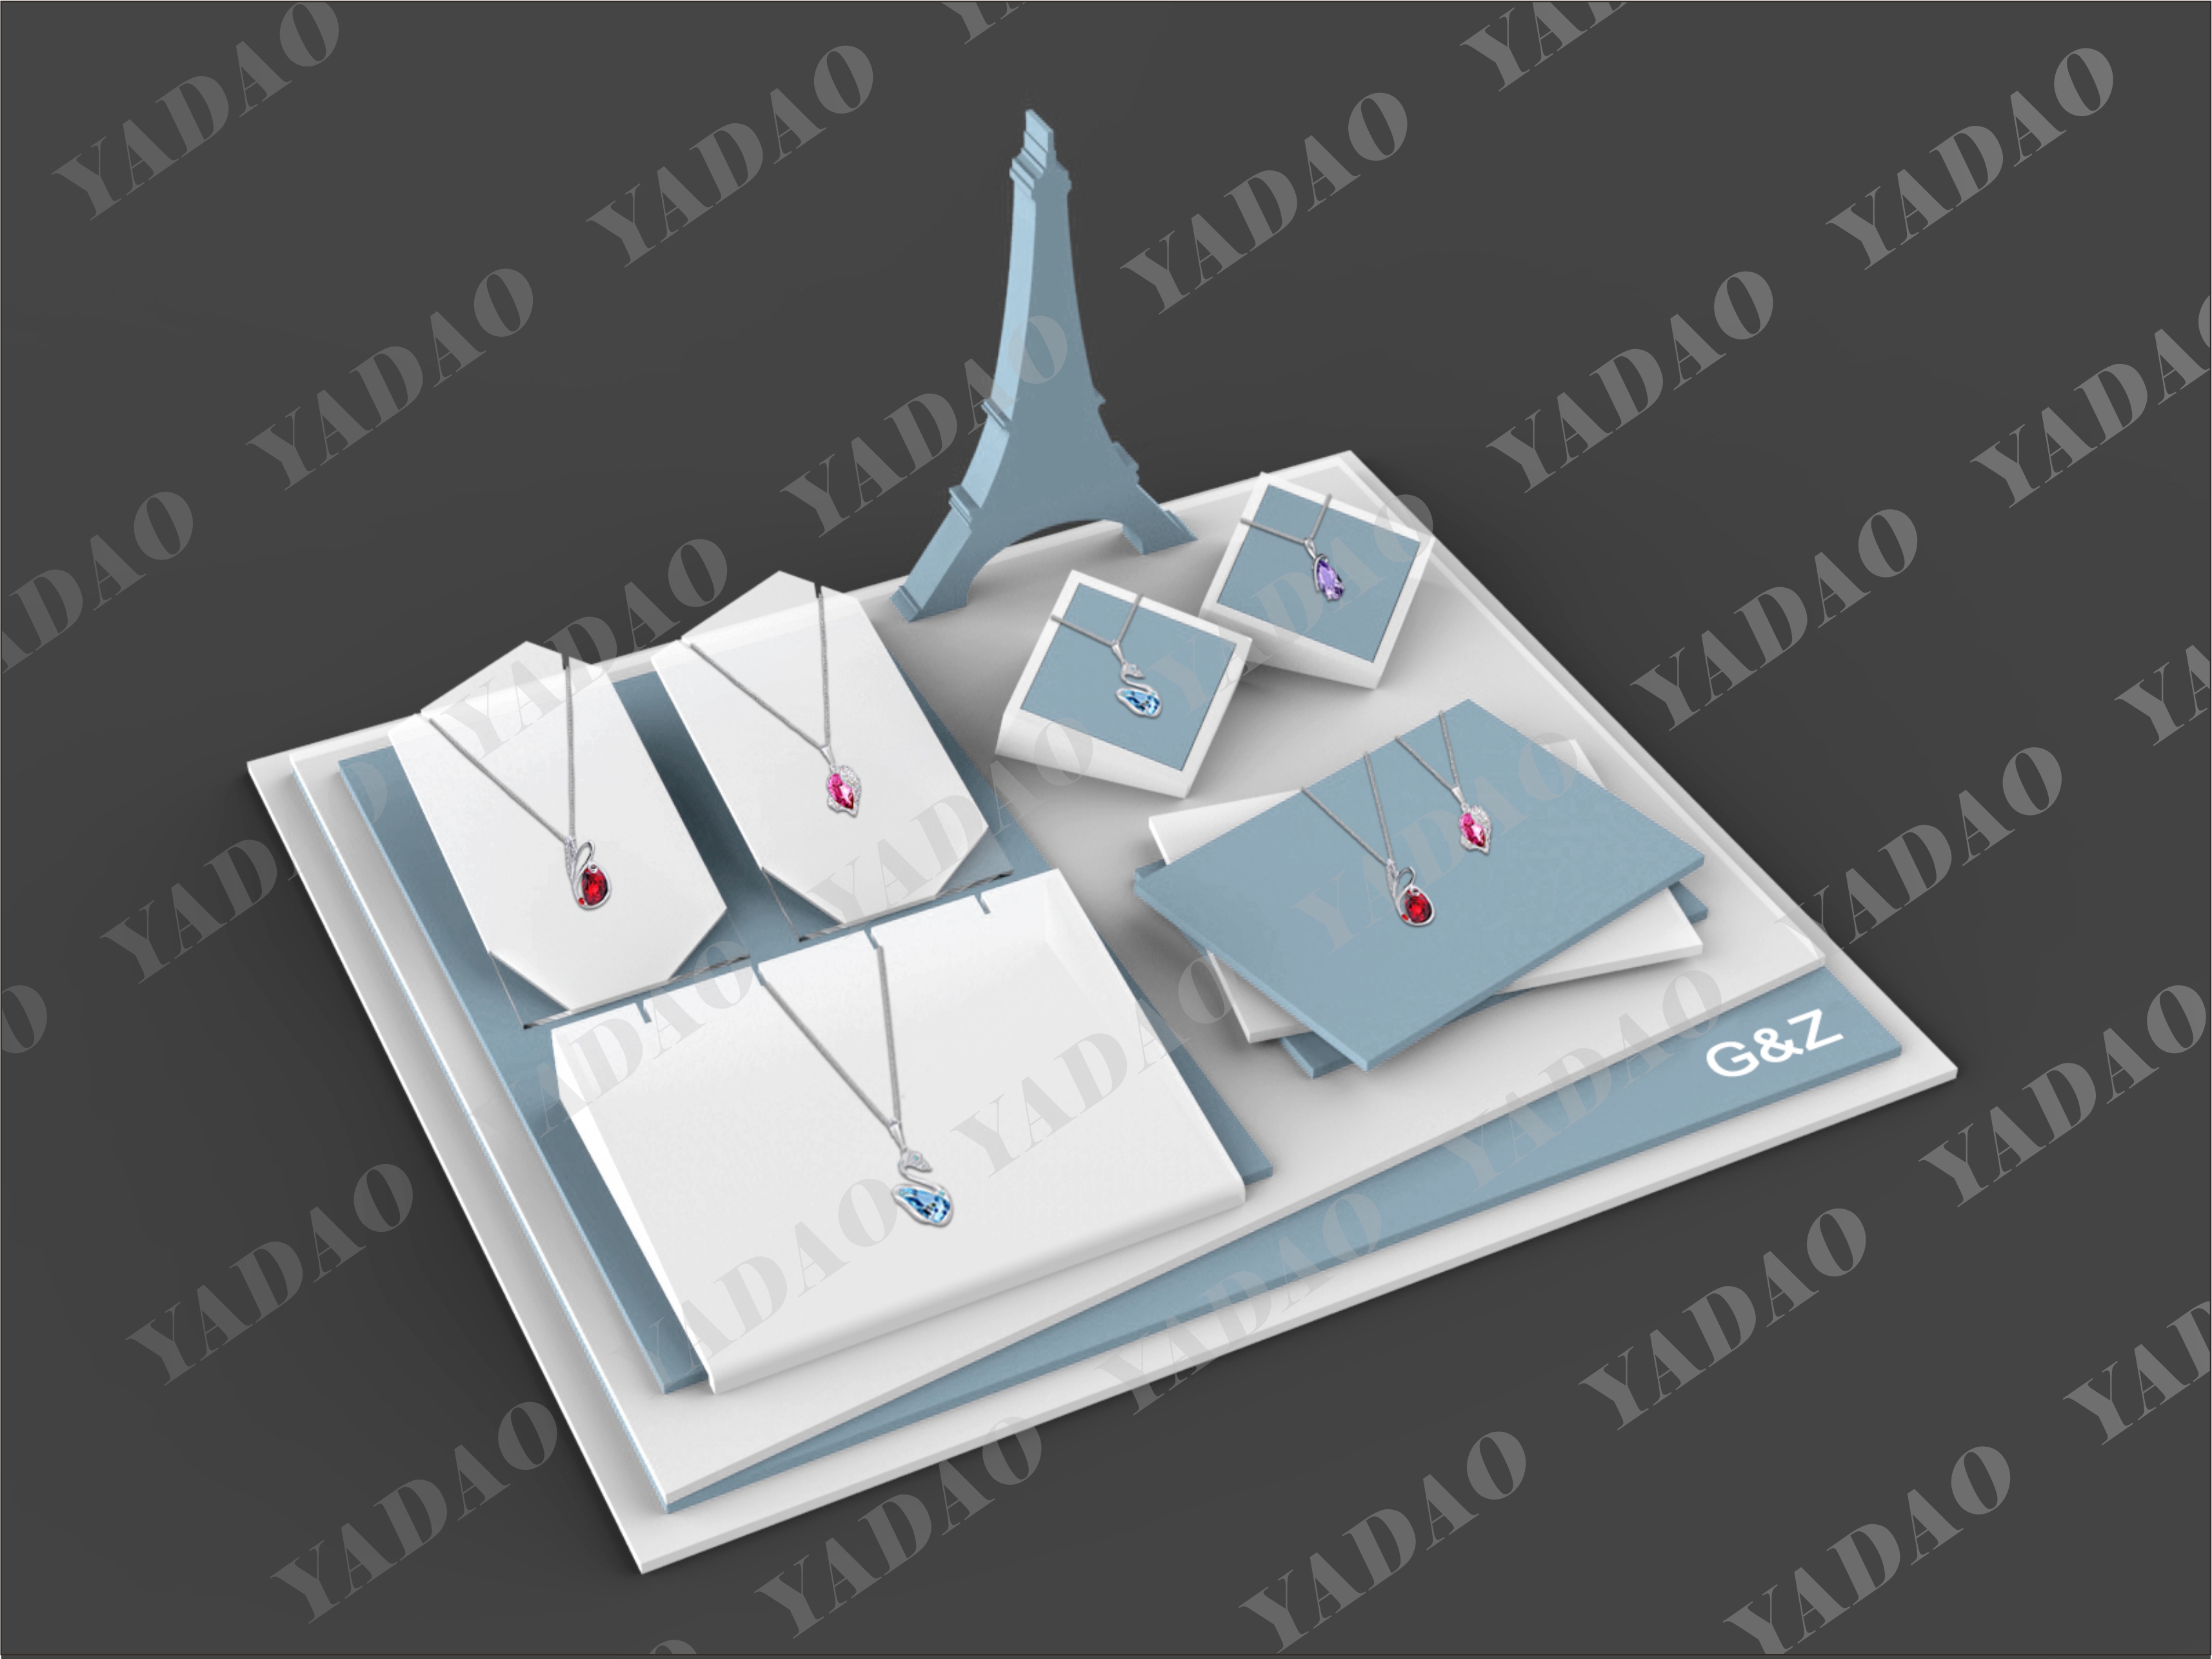 Bella basamento nuovo display gioielli scenografia per gioielli made in China